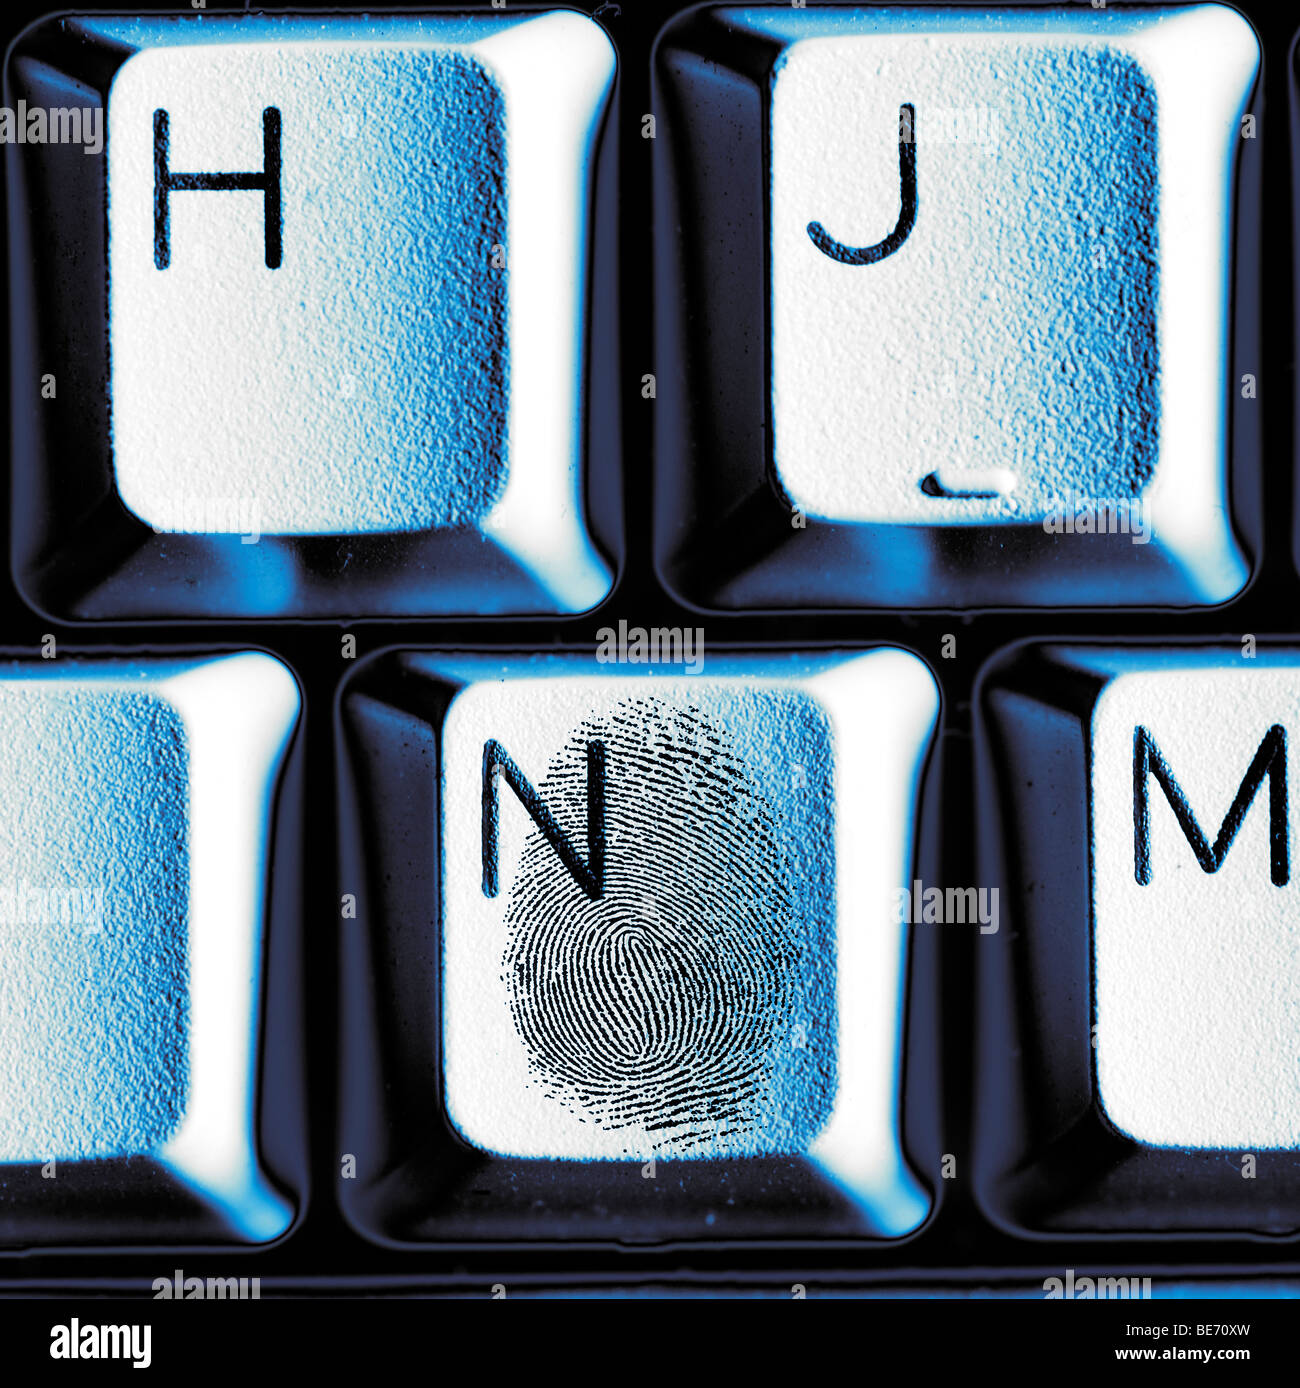 Huella dactilar en tecla ilustrando el robo de identidad Foto de stock